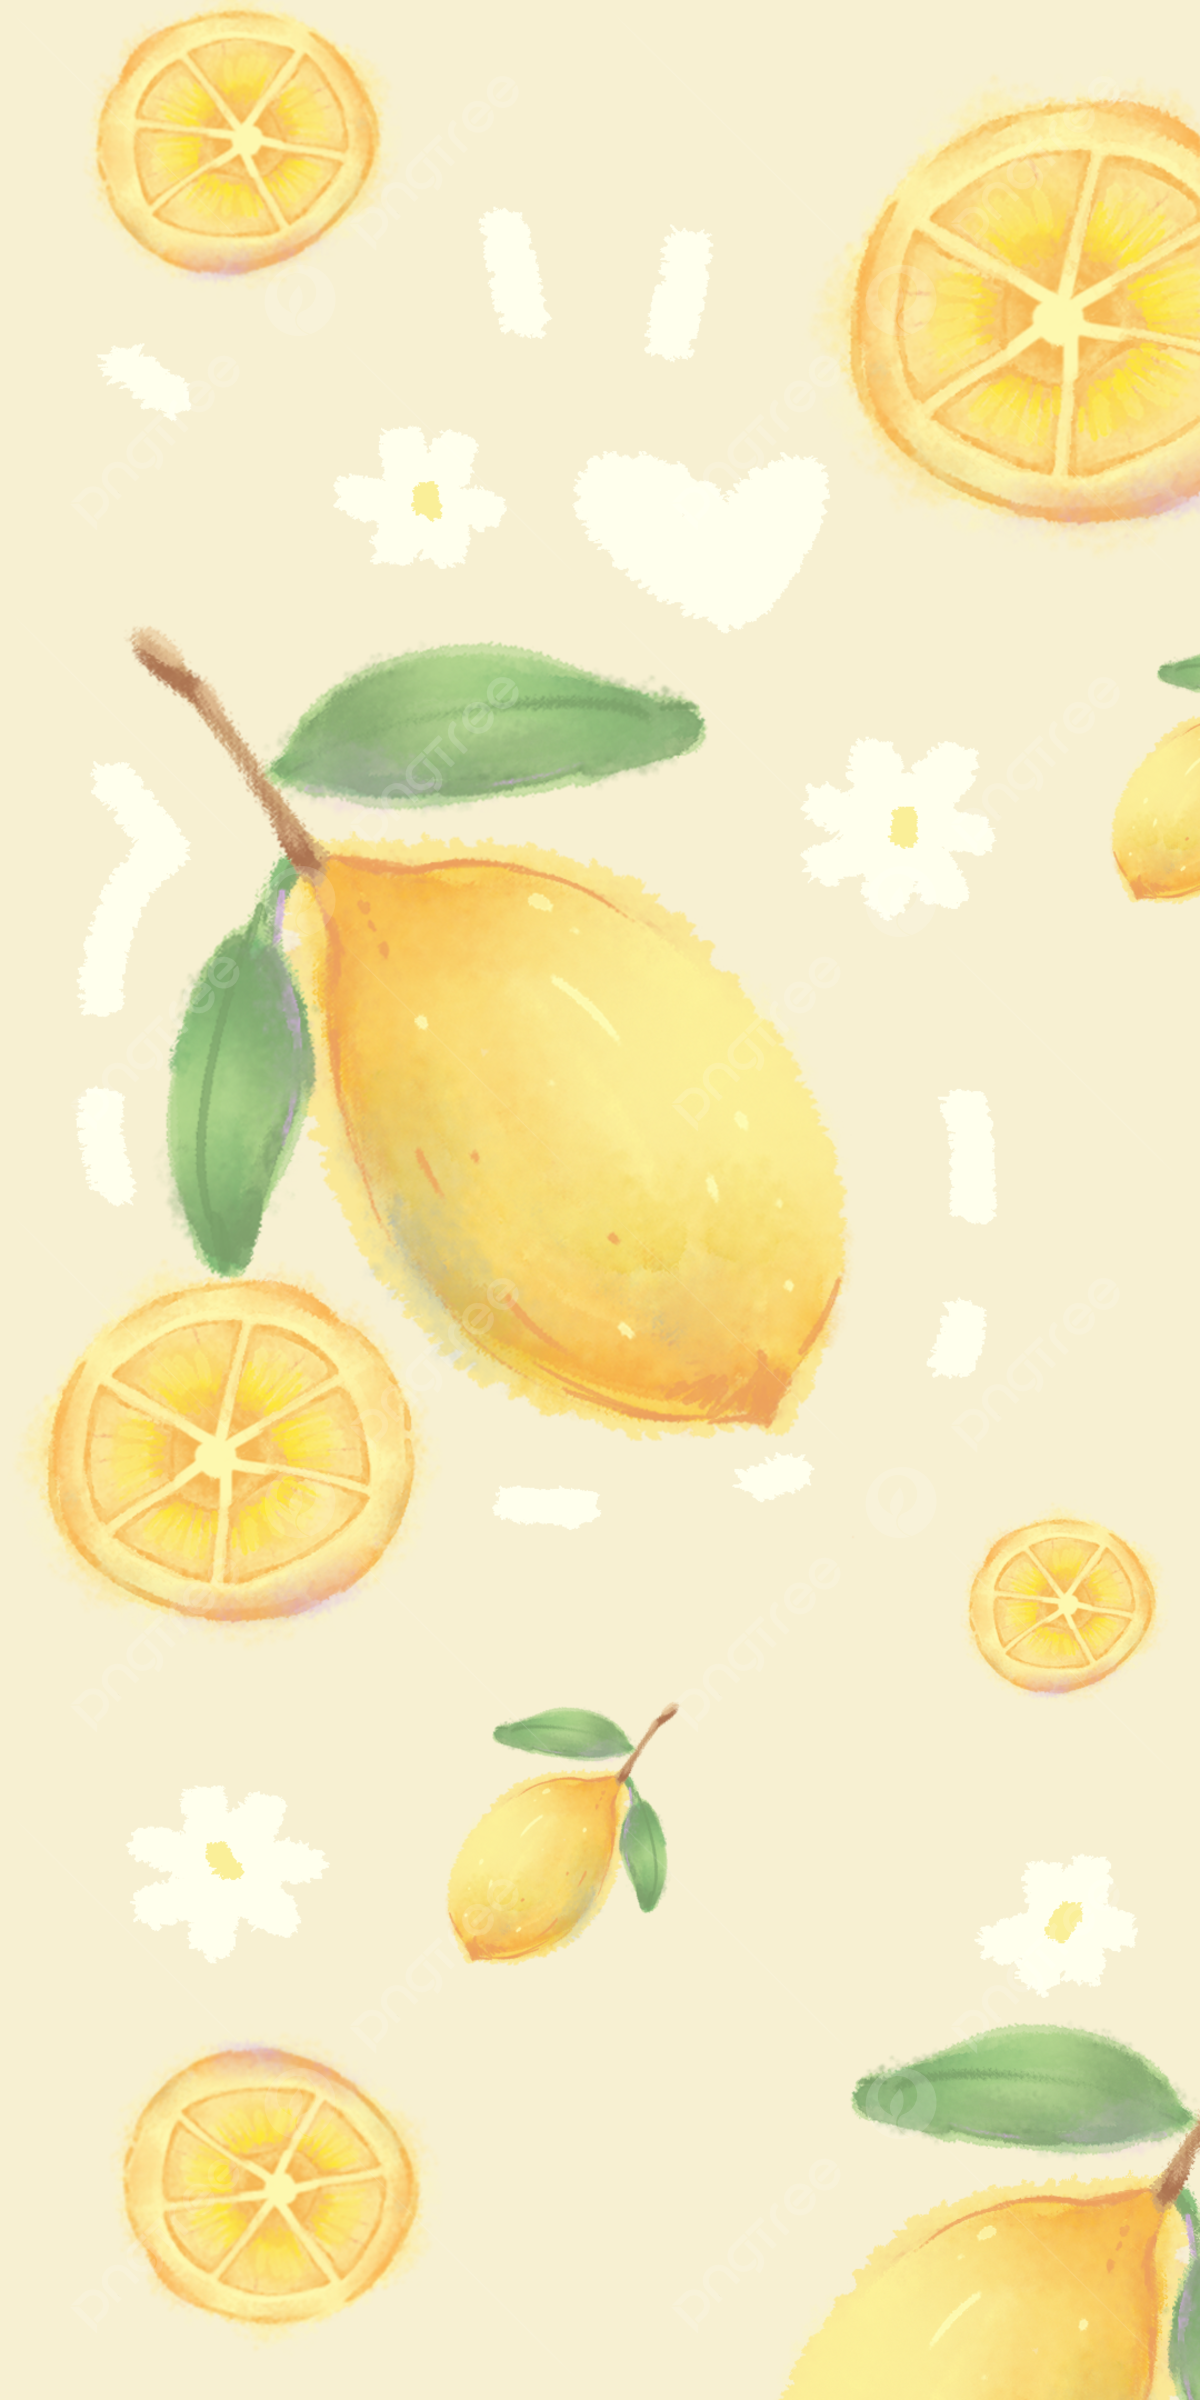 Cute Watercolor Lemon Mobile Wallpaper Background, Lemon, Watercolor, Phone Wallpaper Background Image for Free Download